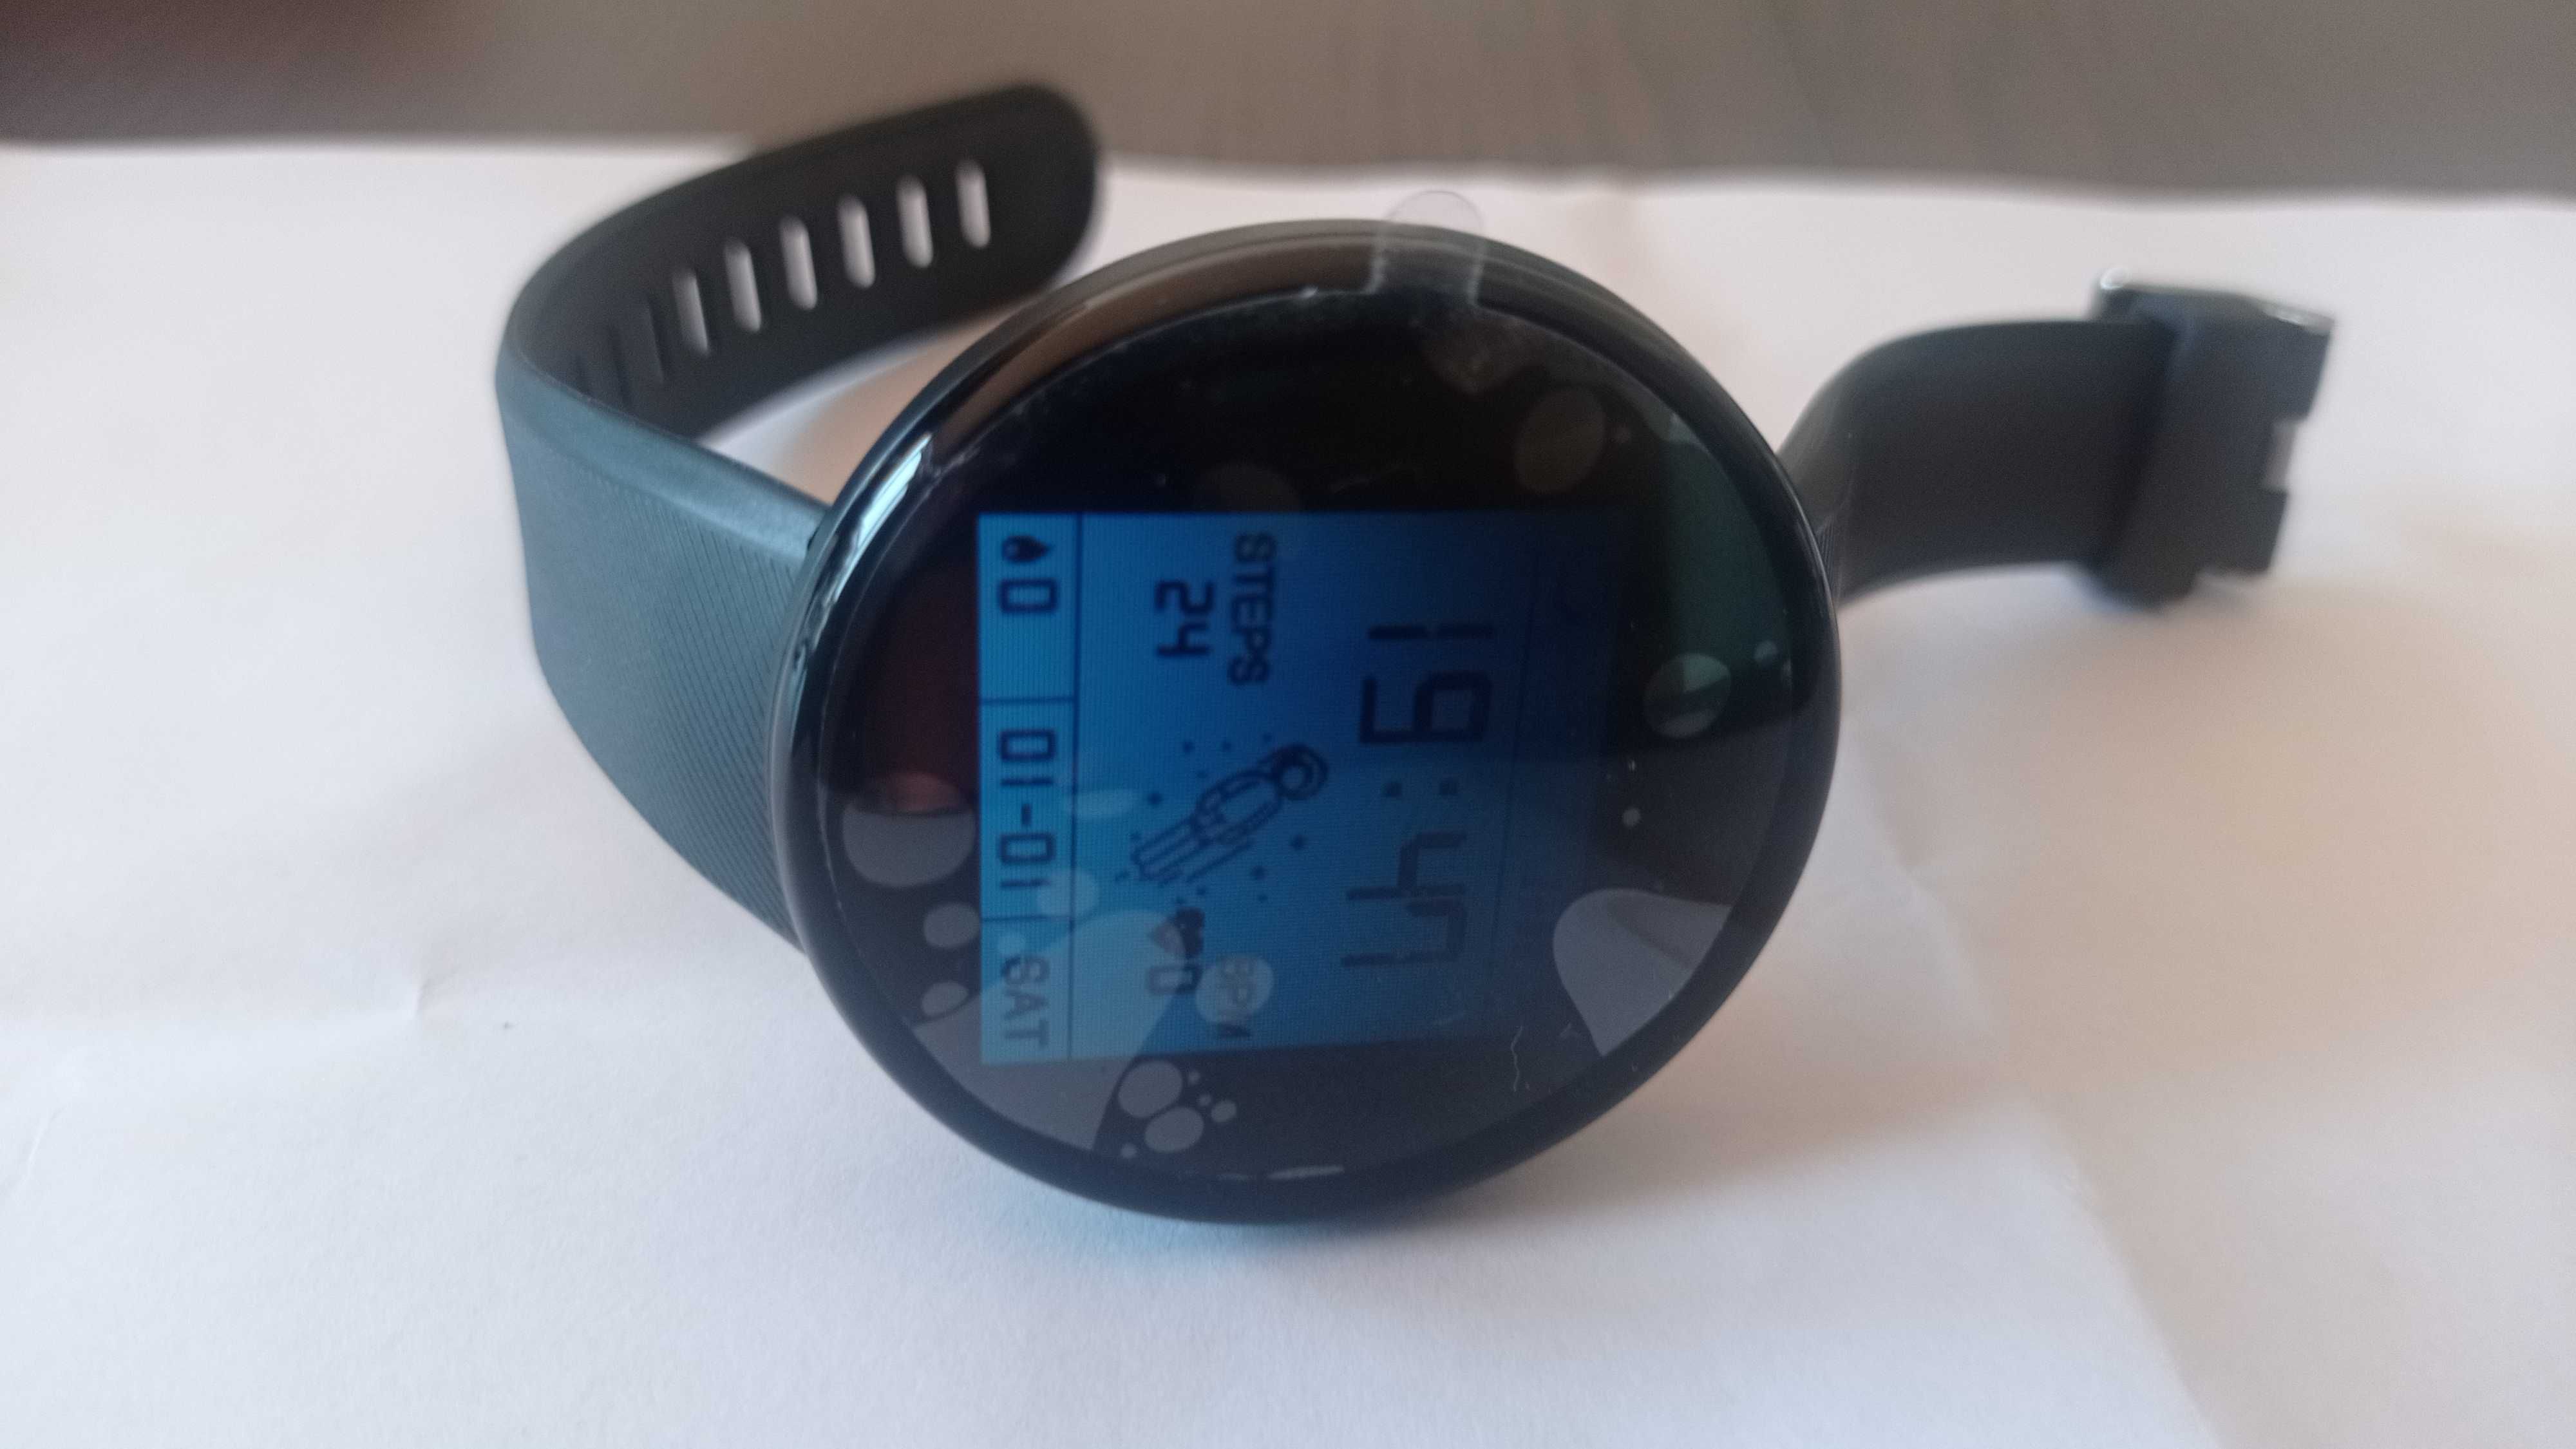 Digital smartwatch relógio